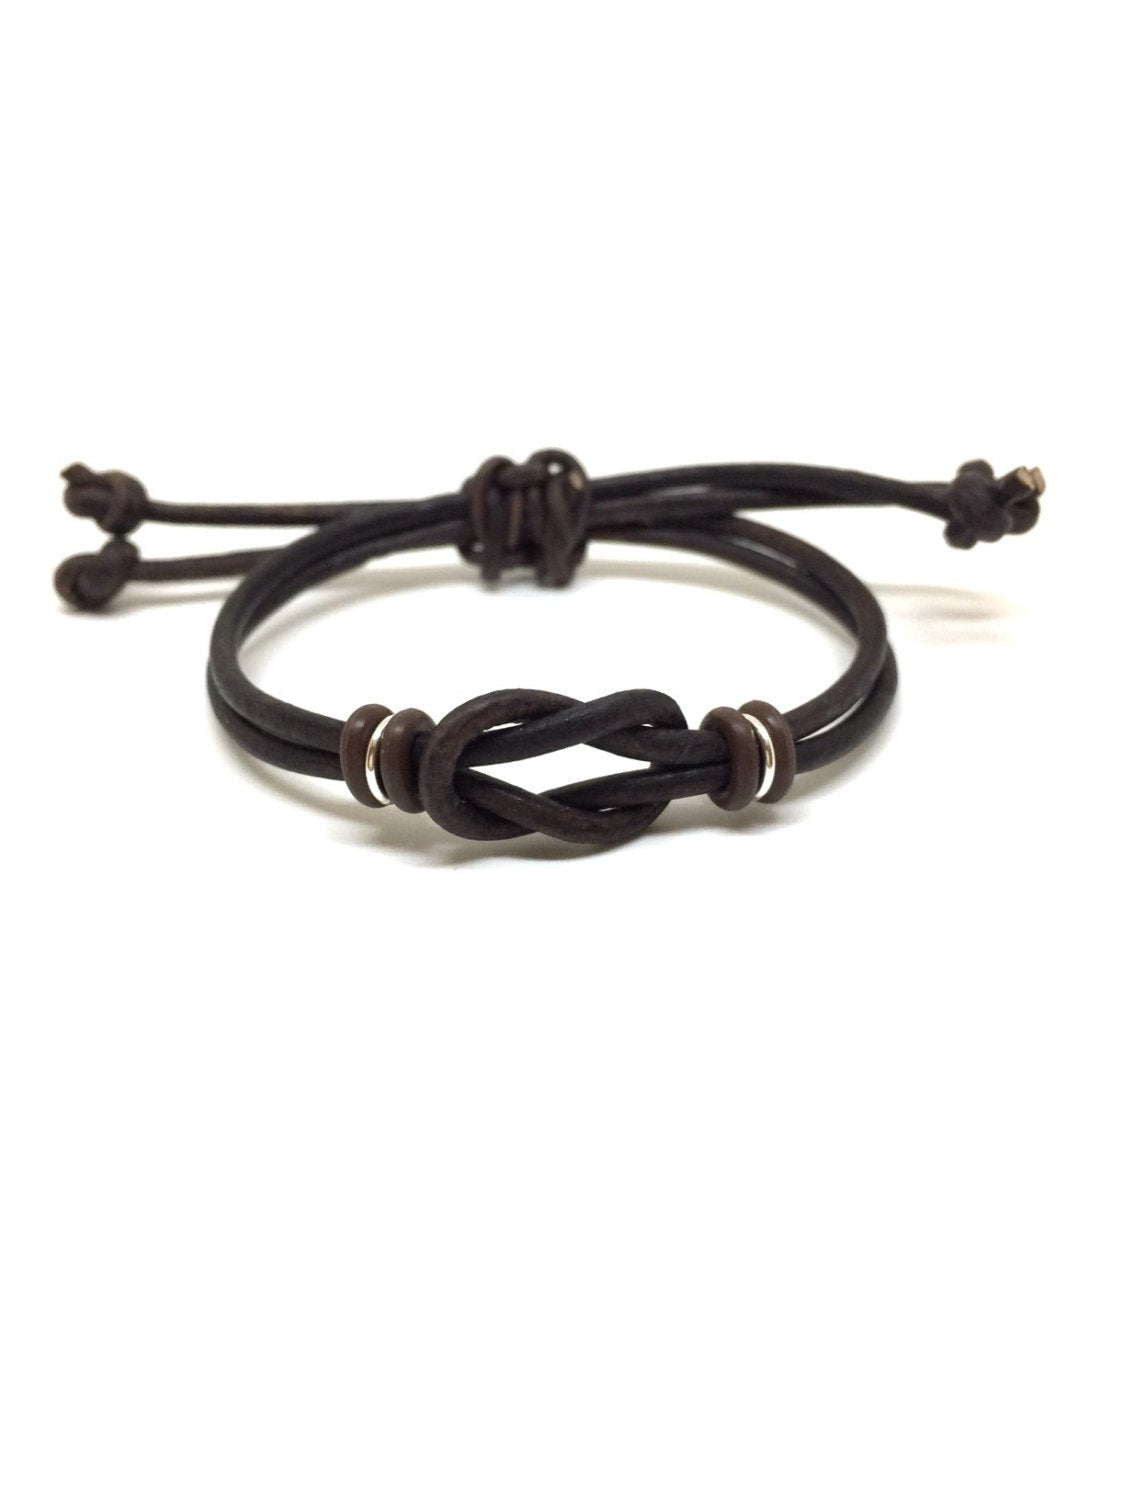 Celtic Knot Leather Bracelet - Gifts&Knots